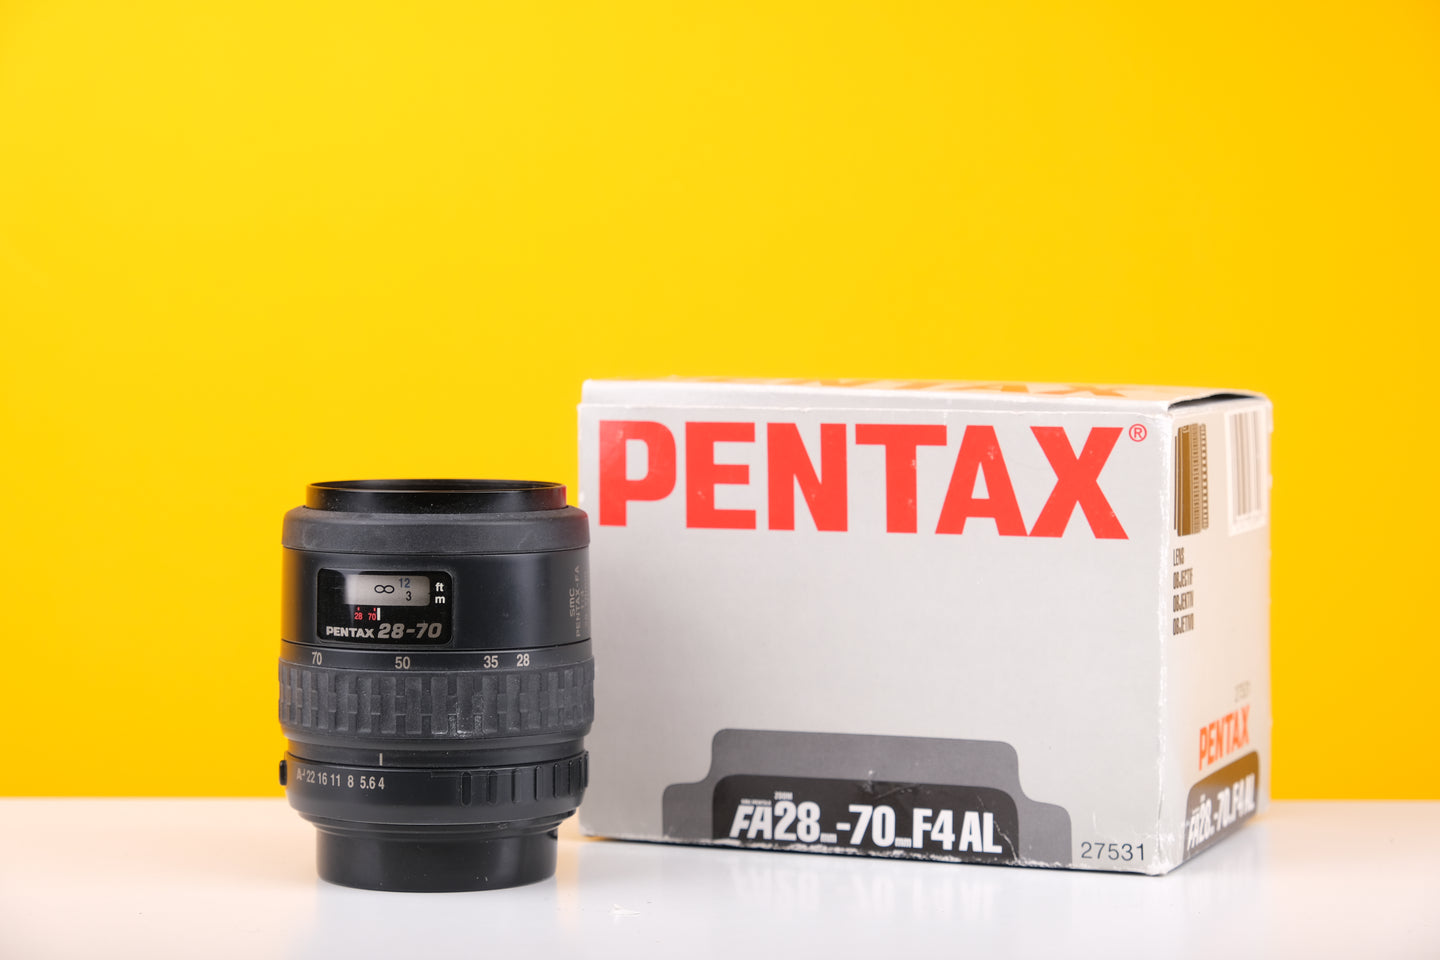 Pentax FA 28-70mm F4 AL Lens